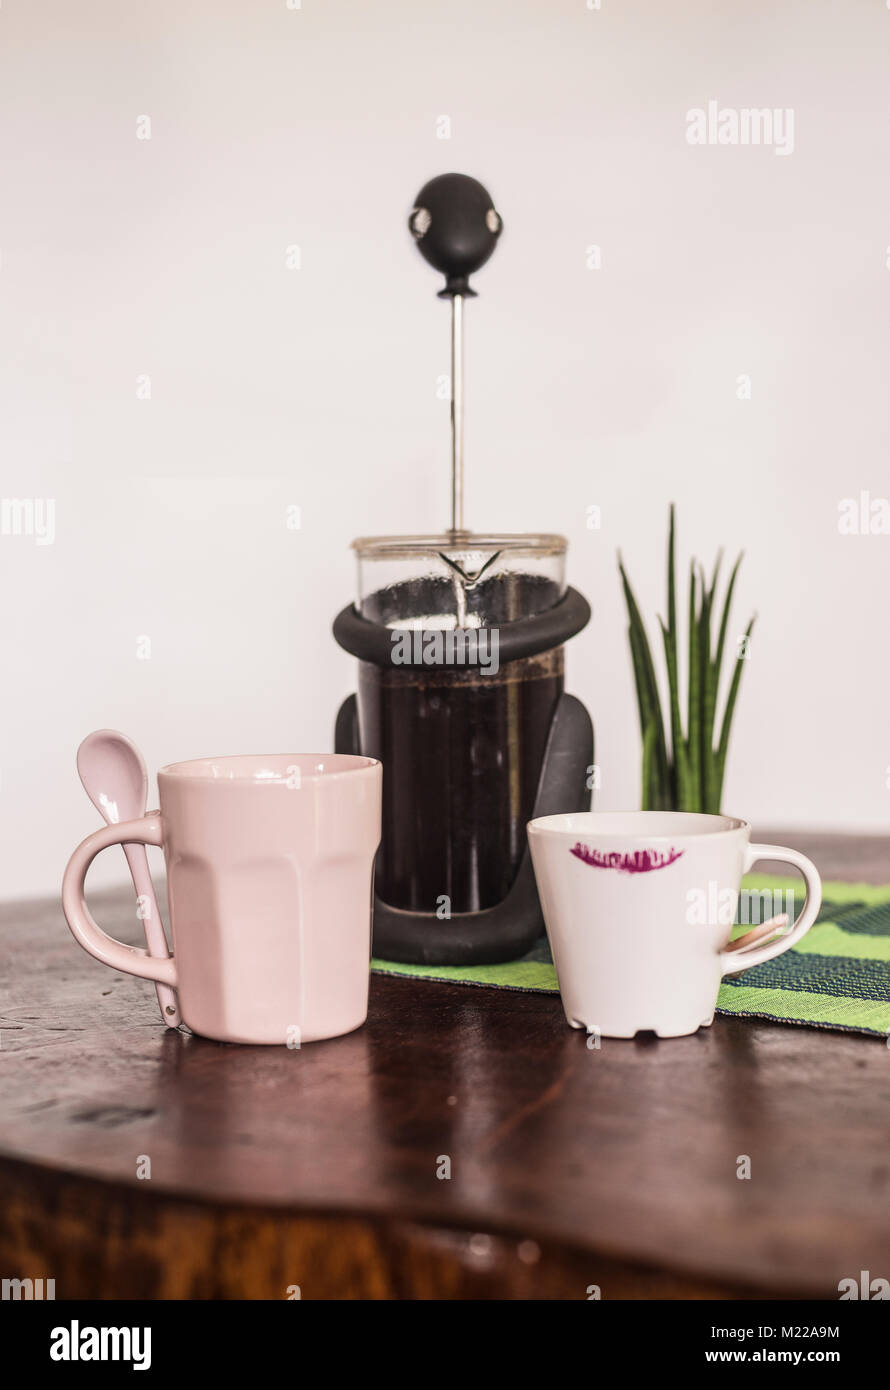 Presse française avec du café noir, et un mug et tasse de café sur une table en bois Banque D'Images